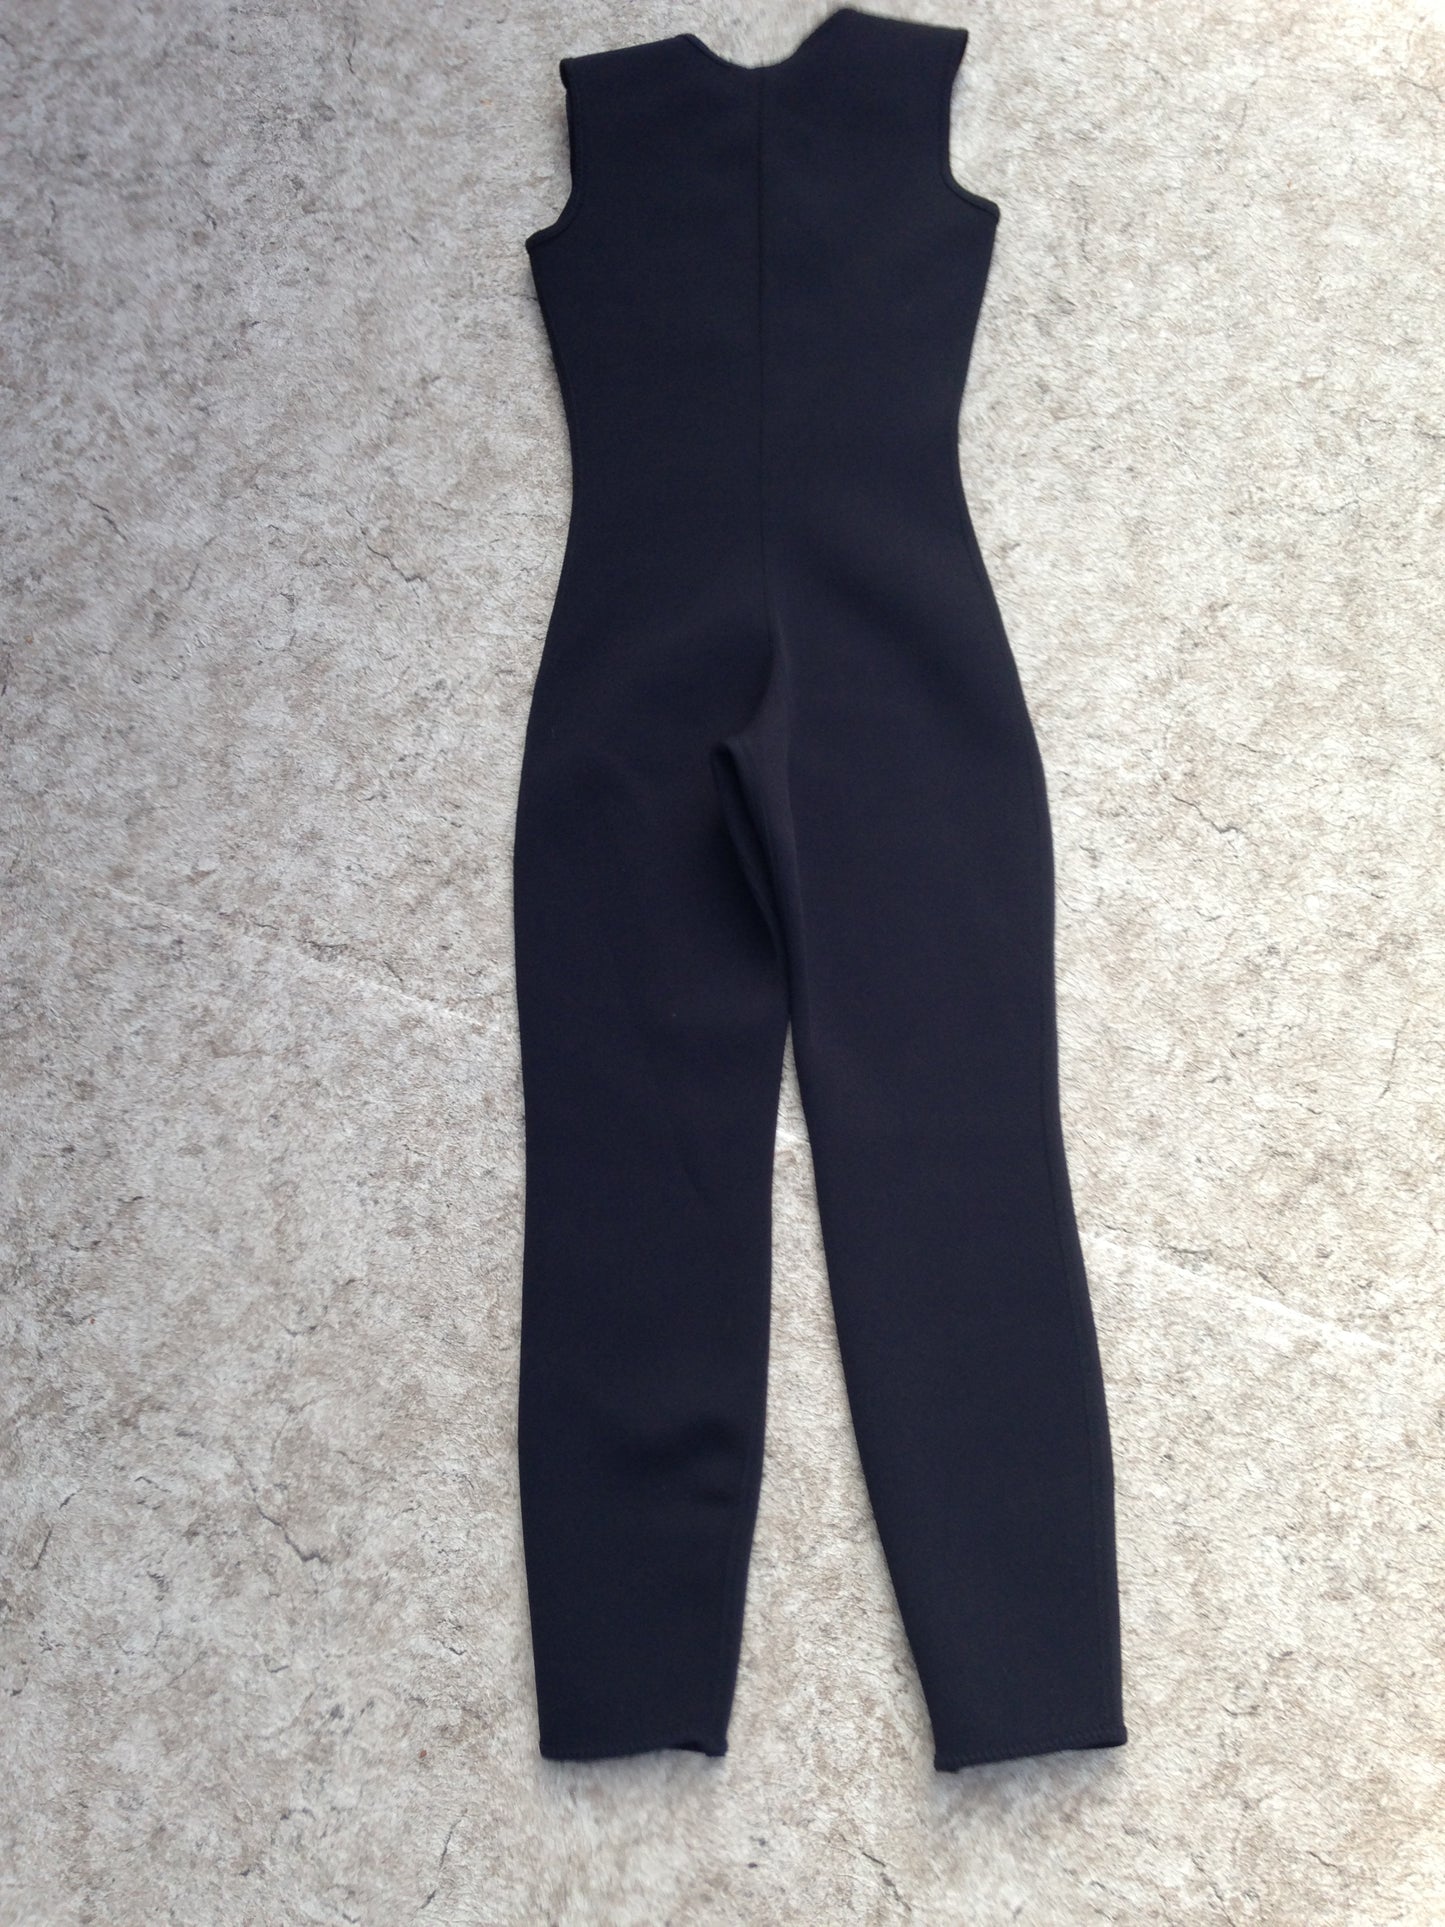 Wetsuit Child Size 14 Bare Full John 2 mm Neoprene Black